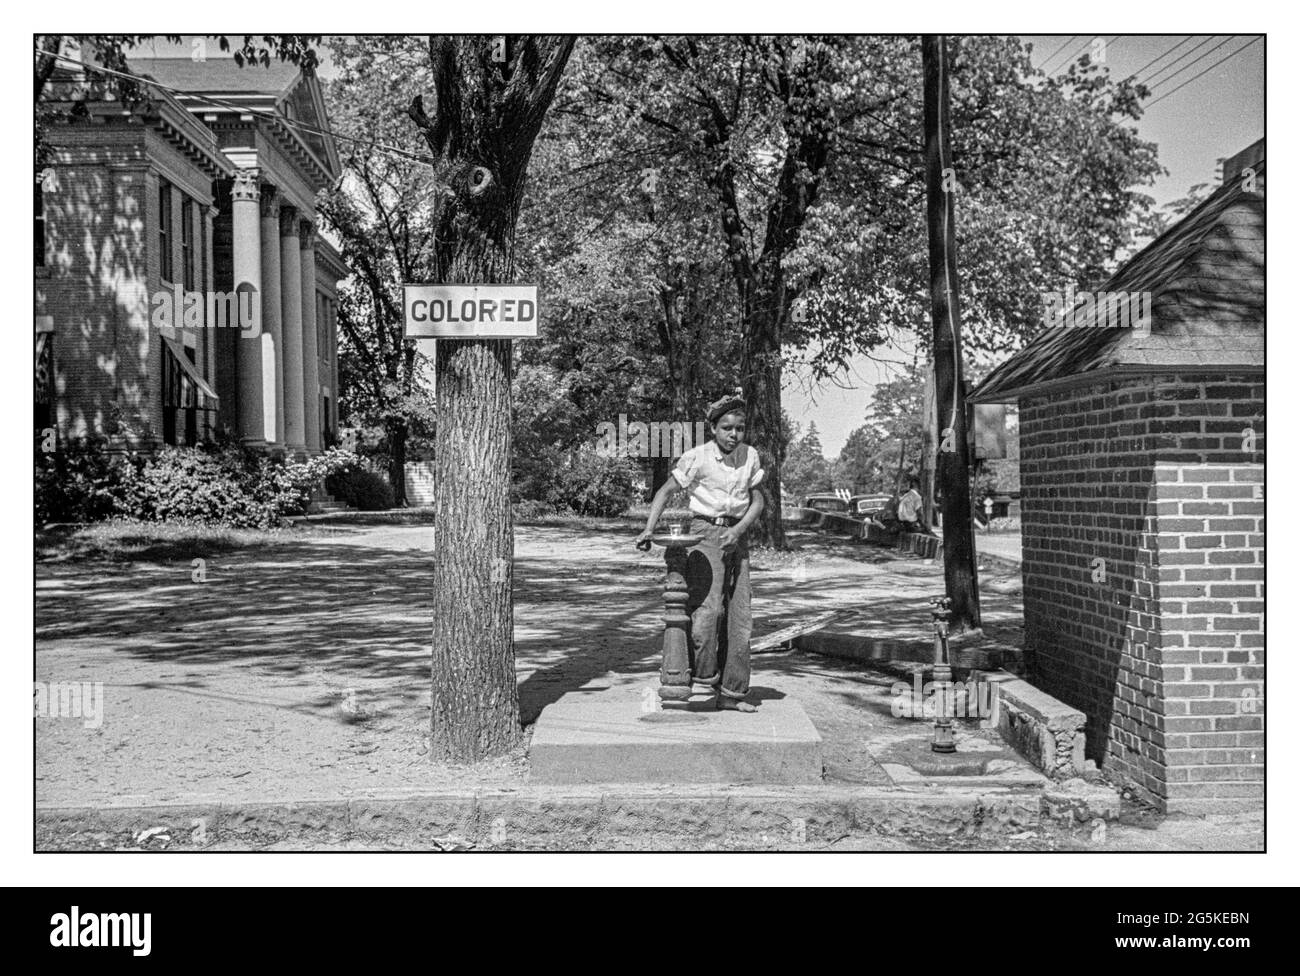 DISCRIMINAZIONE RAZZIALE SEGREGAZIONE USA con segno 'colorato' su fontana bevente sul prato del tribunale della contea, con giovani afroamericani in piedi alla fontana. Halifax, Carolina del Nord USA John Vachon fotografo 1938 . Foto Stock